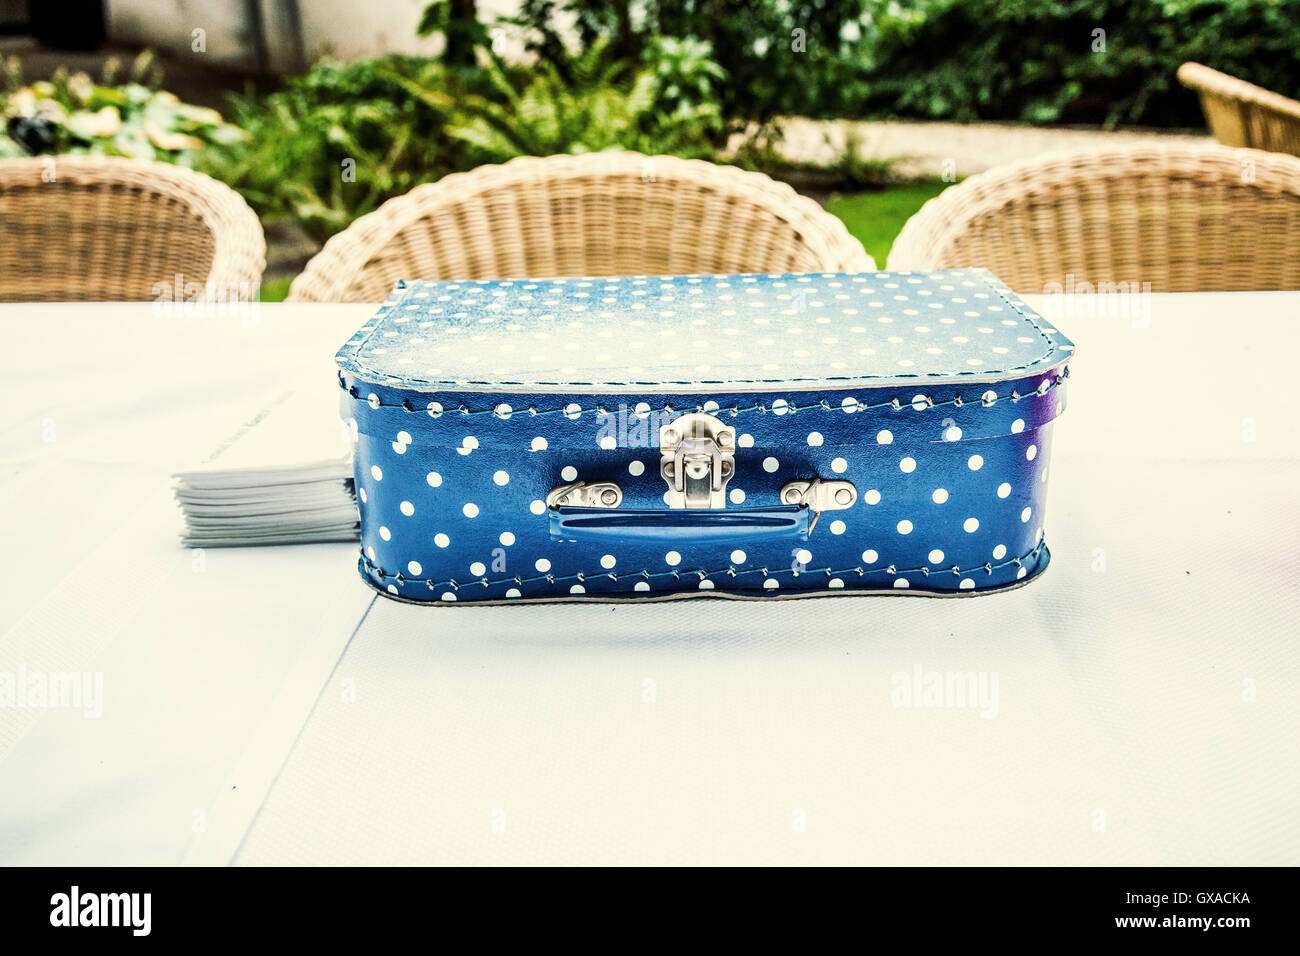 Bambino la valigia blu con puntini bianchi su un tavolo in un giardino sembra essere galleggiante sopra la tovaglia bianca. Foto Stock